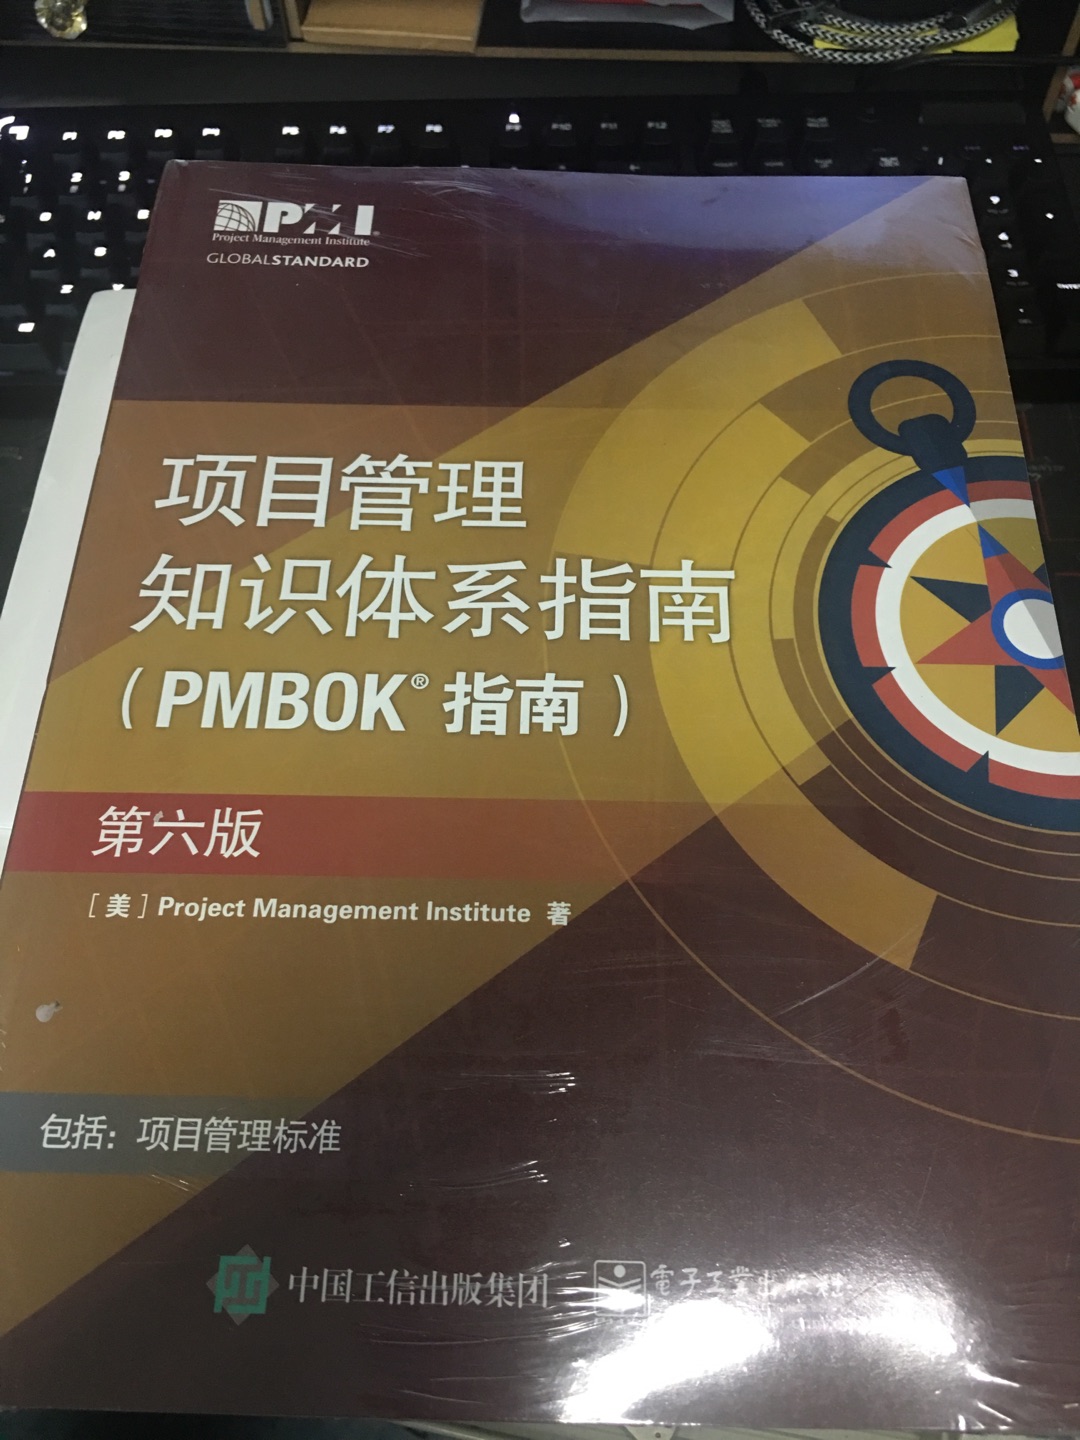 已经考过，pm bok是一本非常好的工具书。看到有新版，果断入手。